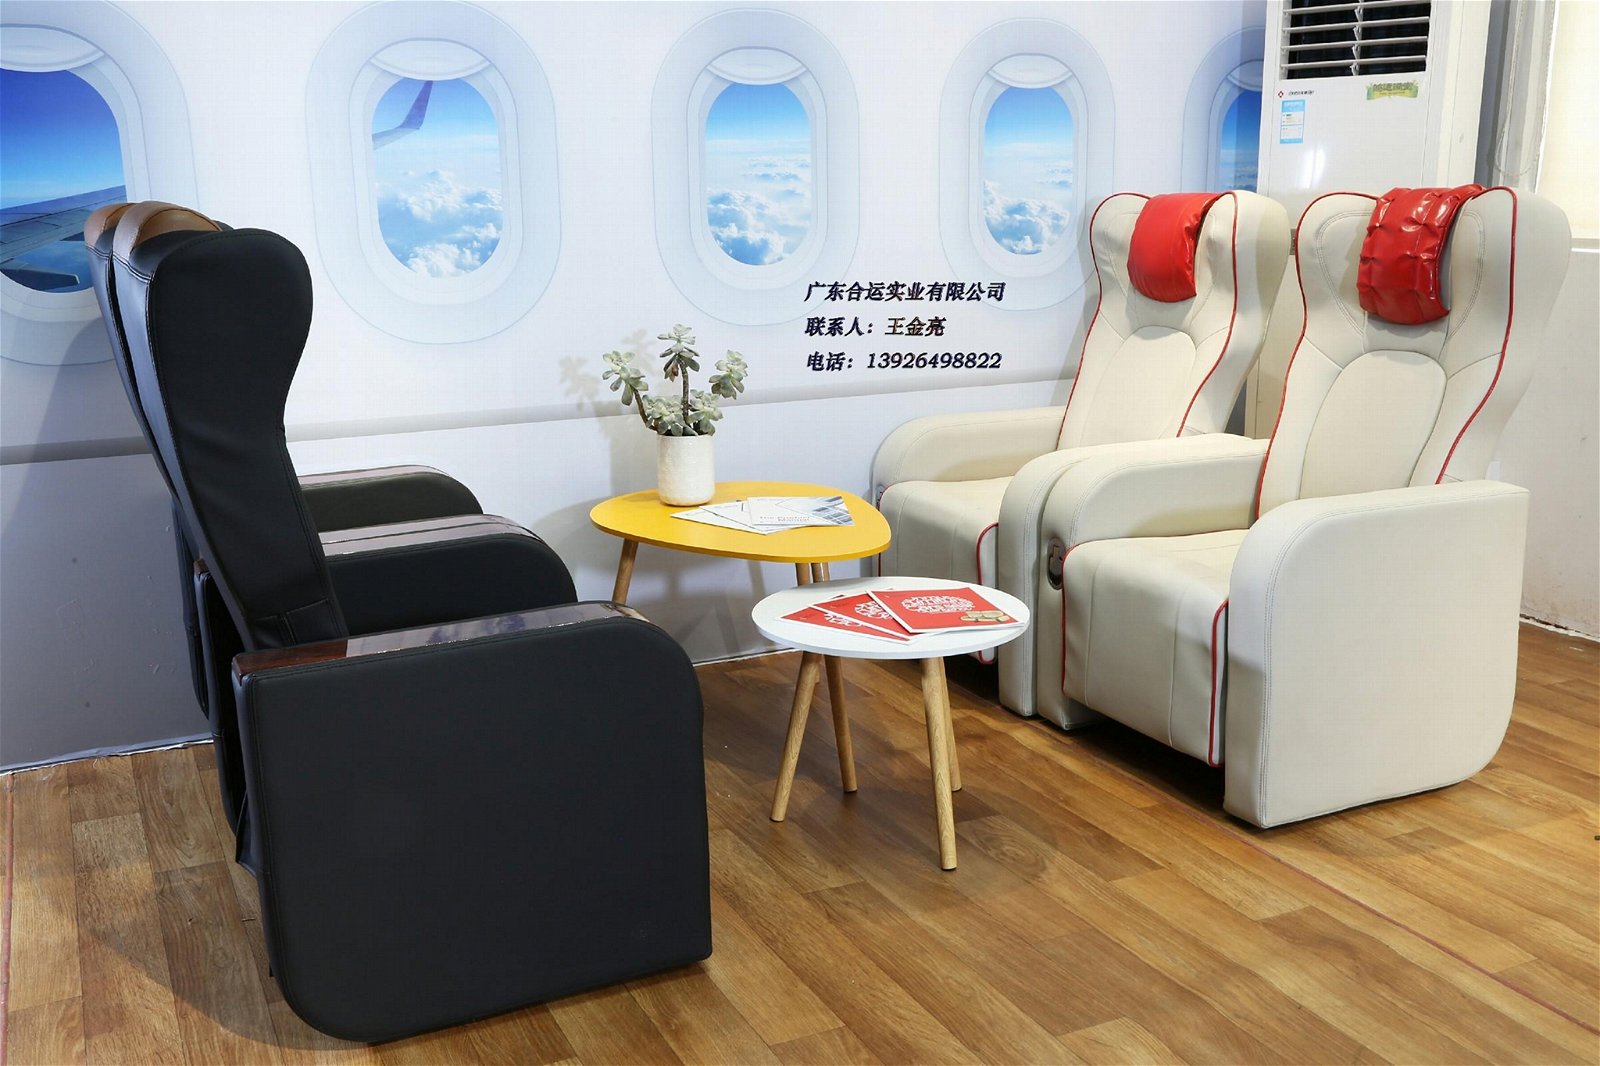 航空餐廳餐椅